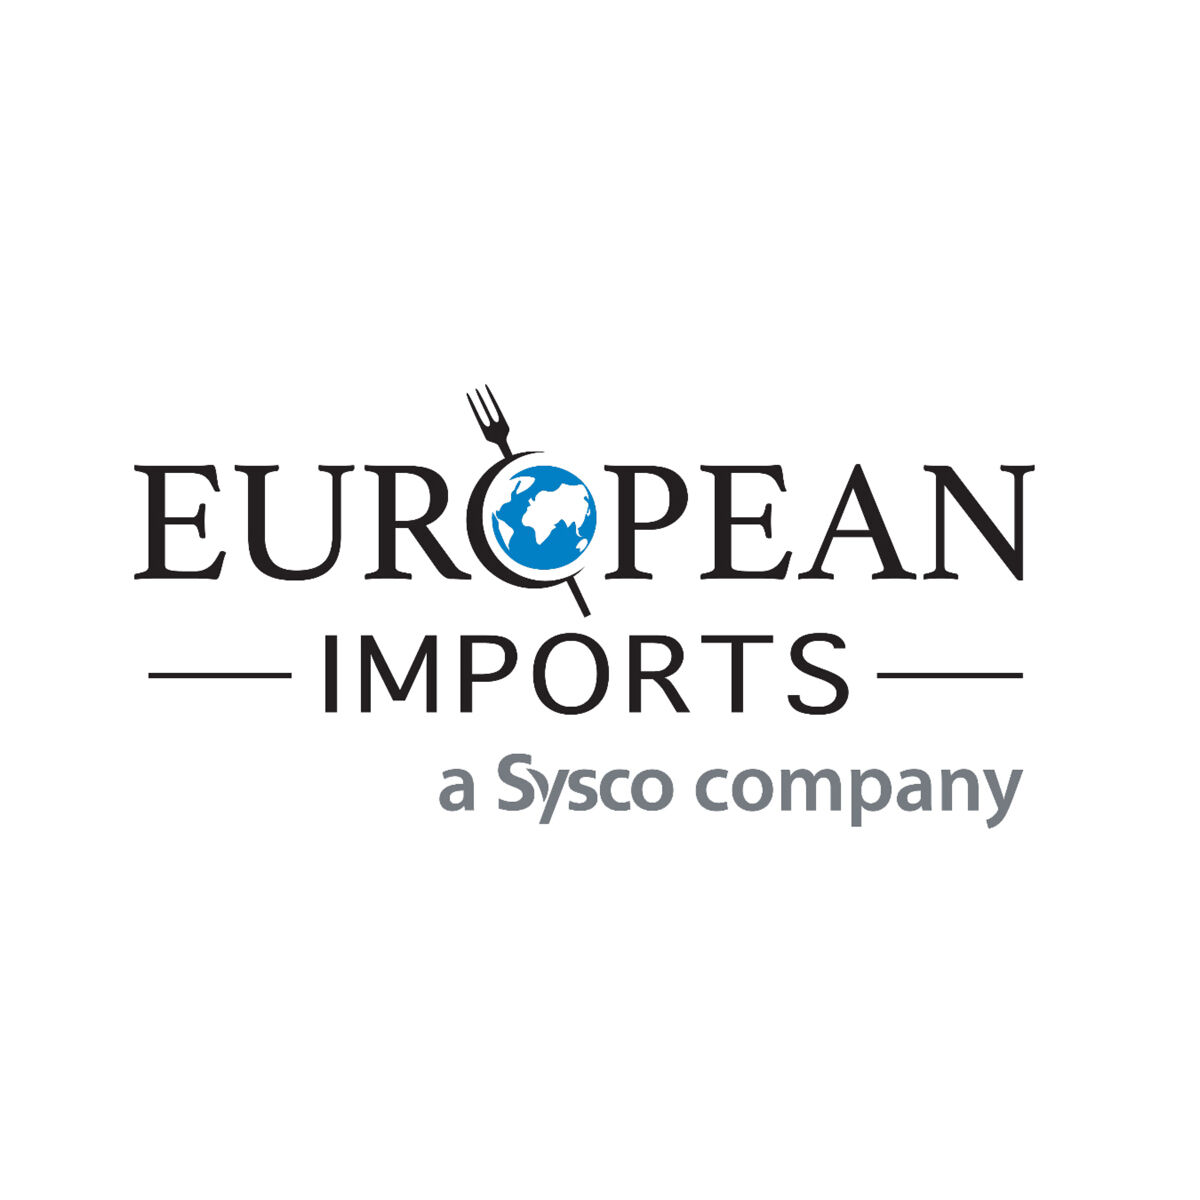 European Imports | A Sysco Company